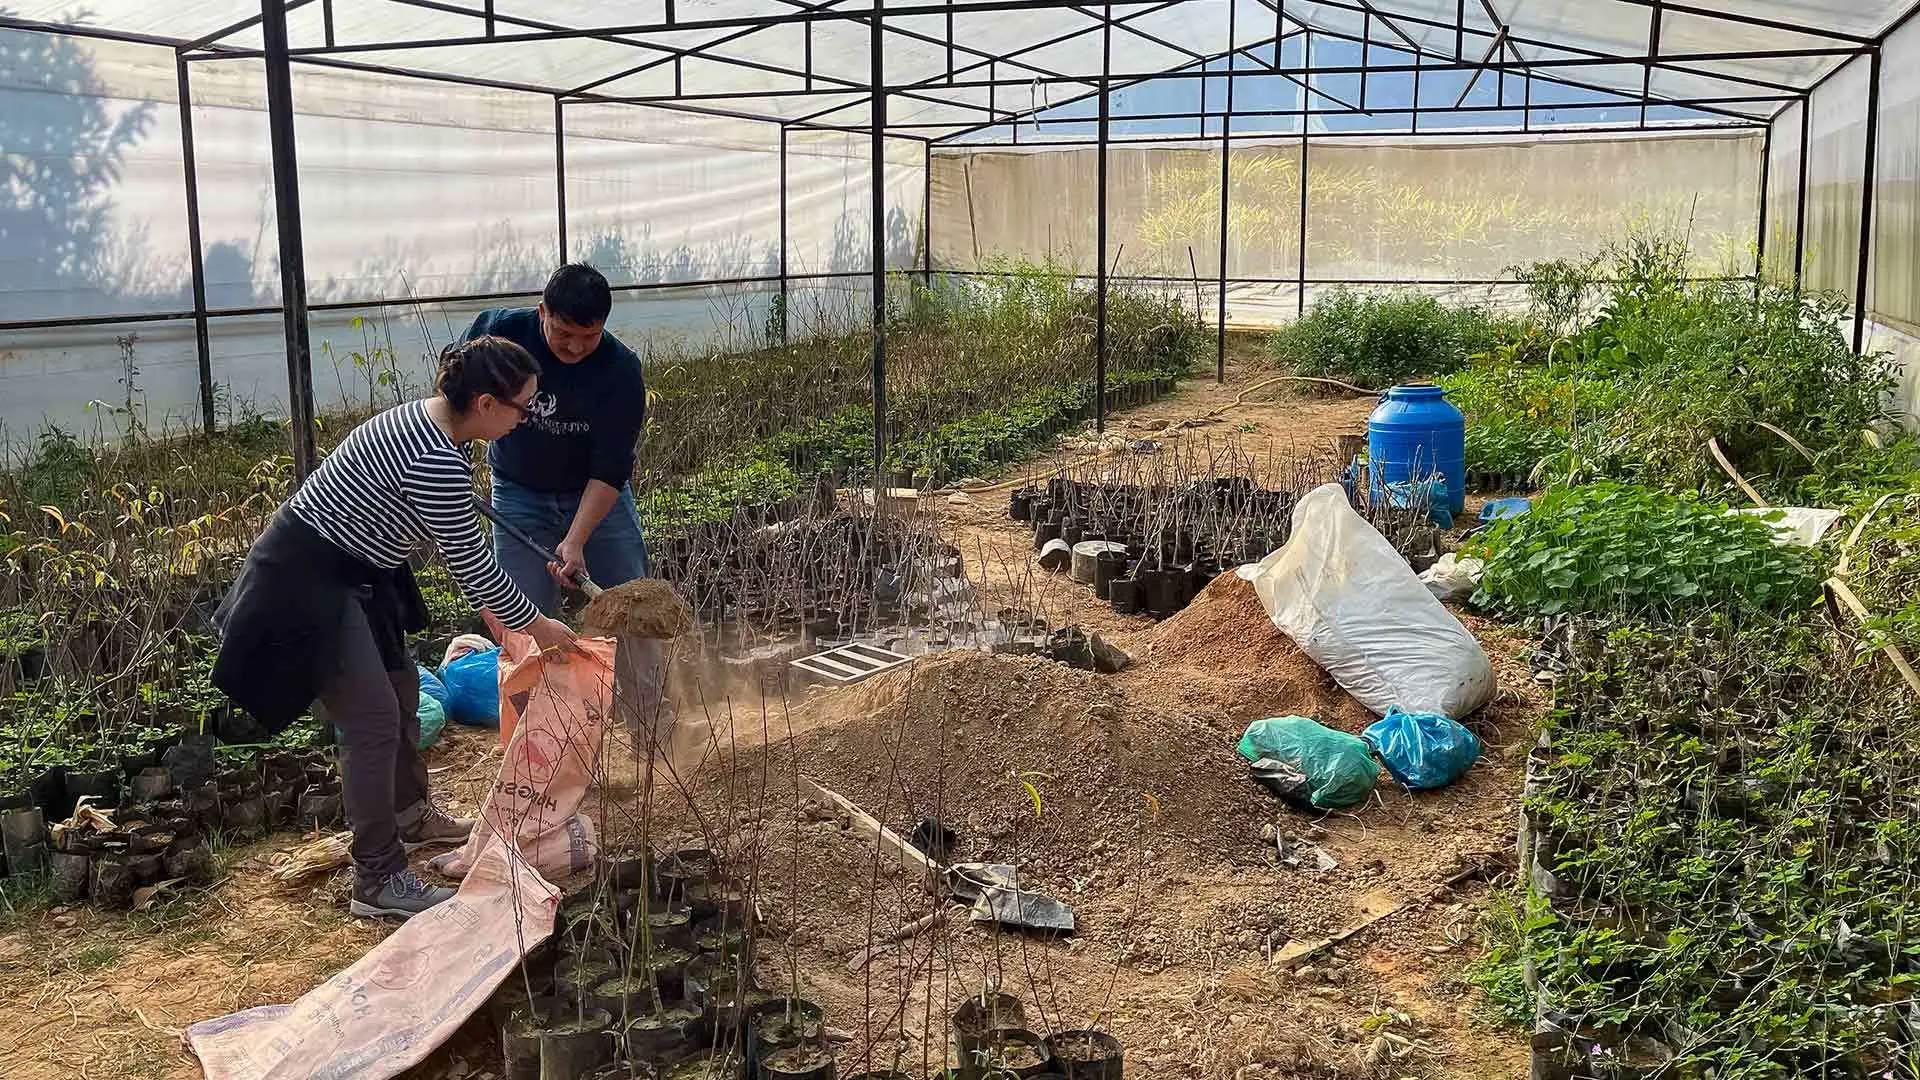 卡米拉一. Proano, 全球管家会员, 与当地园艺师和生物技术专家Roshan Shreshta合作，在Sanskriti农场和研究中心收集新鲜土壤，用于种植金橘树. 研究生们, 是全球生态联盟的一部分, 本月前往尼泊尔，运用他们在水取样和分析方面的专业知识，向纳摩佛市的市民提供解决方案. 图片由环球管家提供.